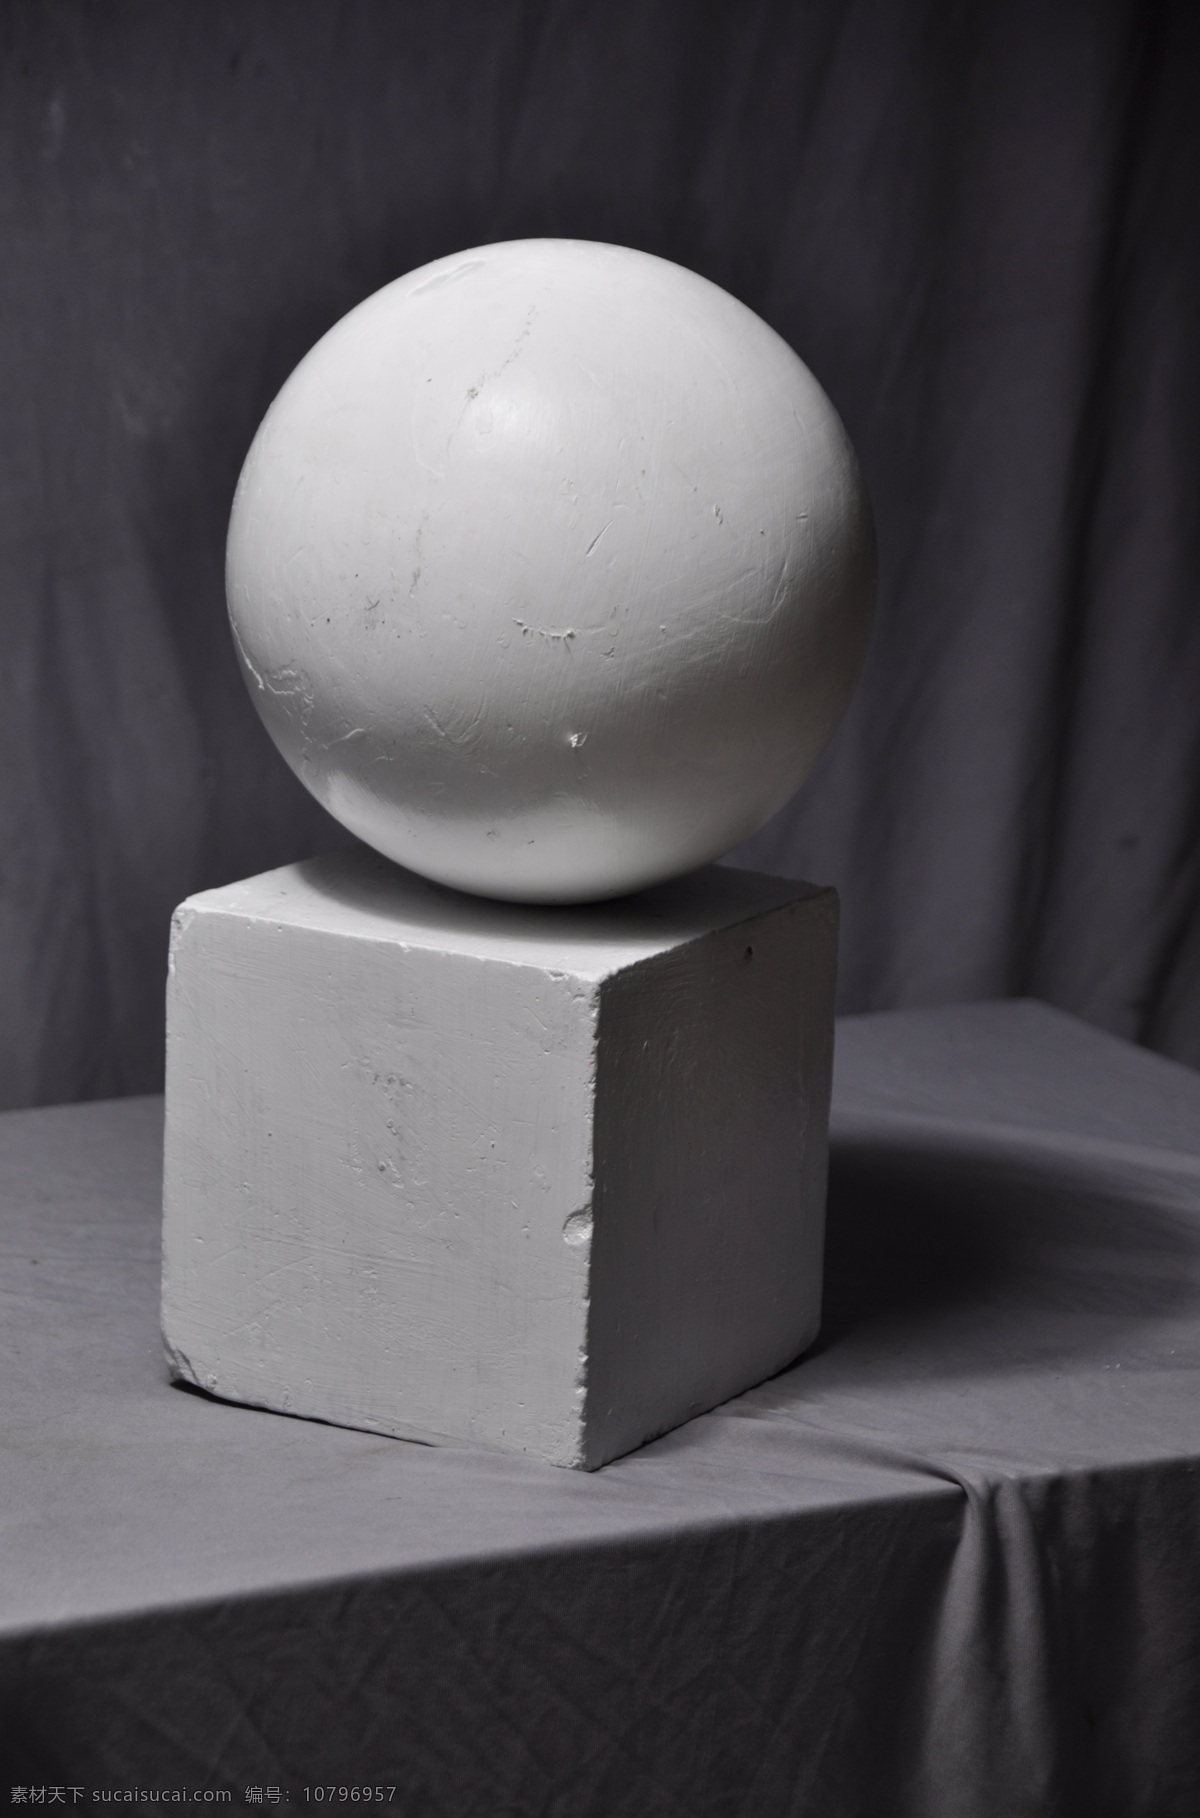 石膏几何体 球体 正方体 石膏 几何体 素描 绘画练习 黑白 美术教材 文化艺术 美术绘画